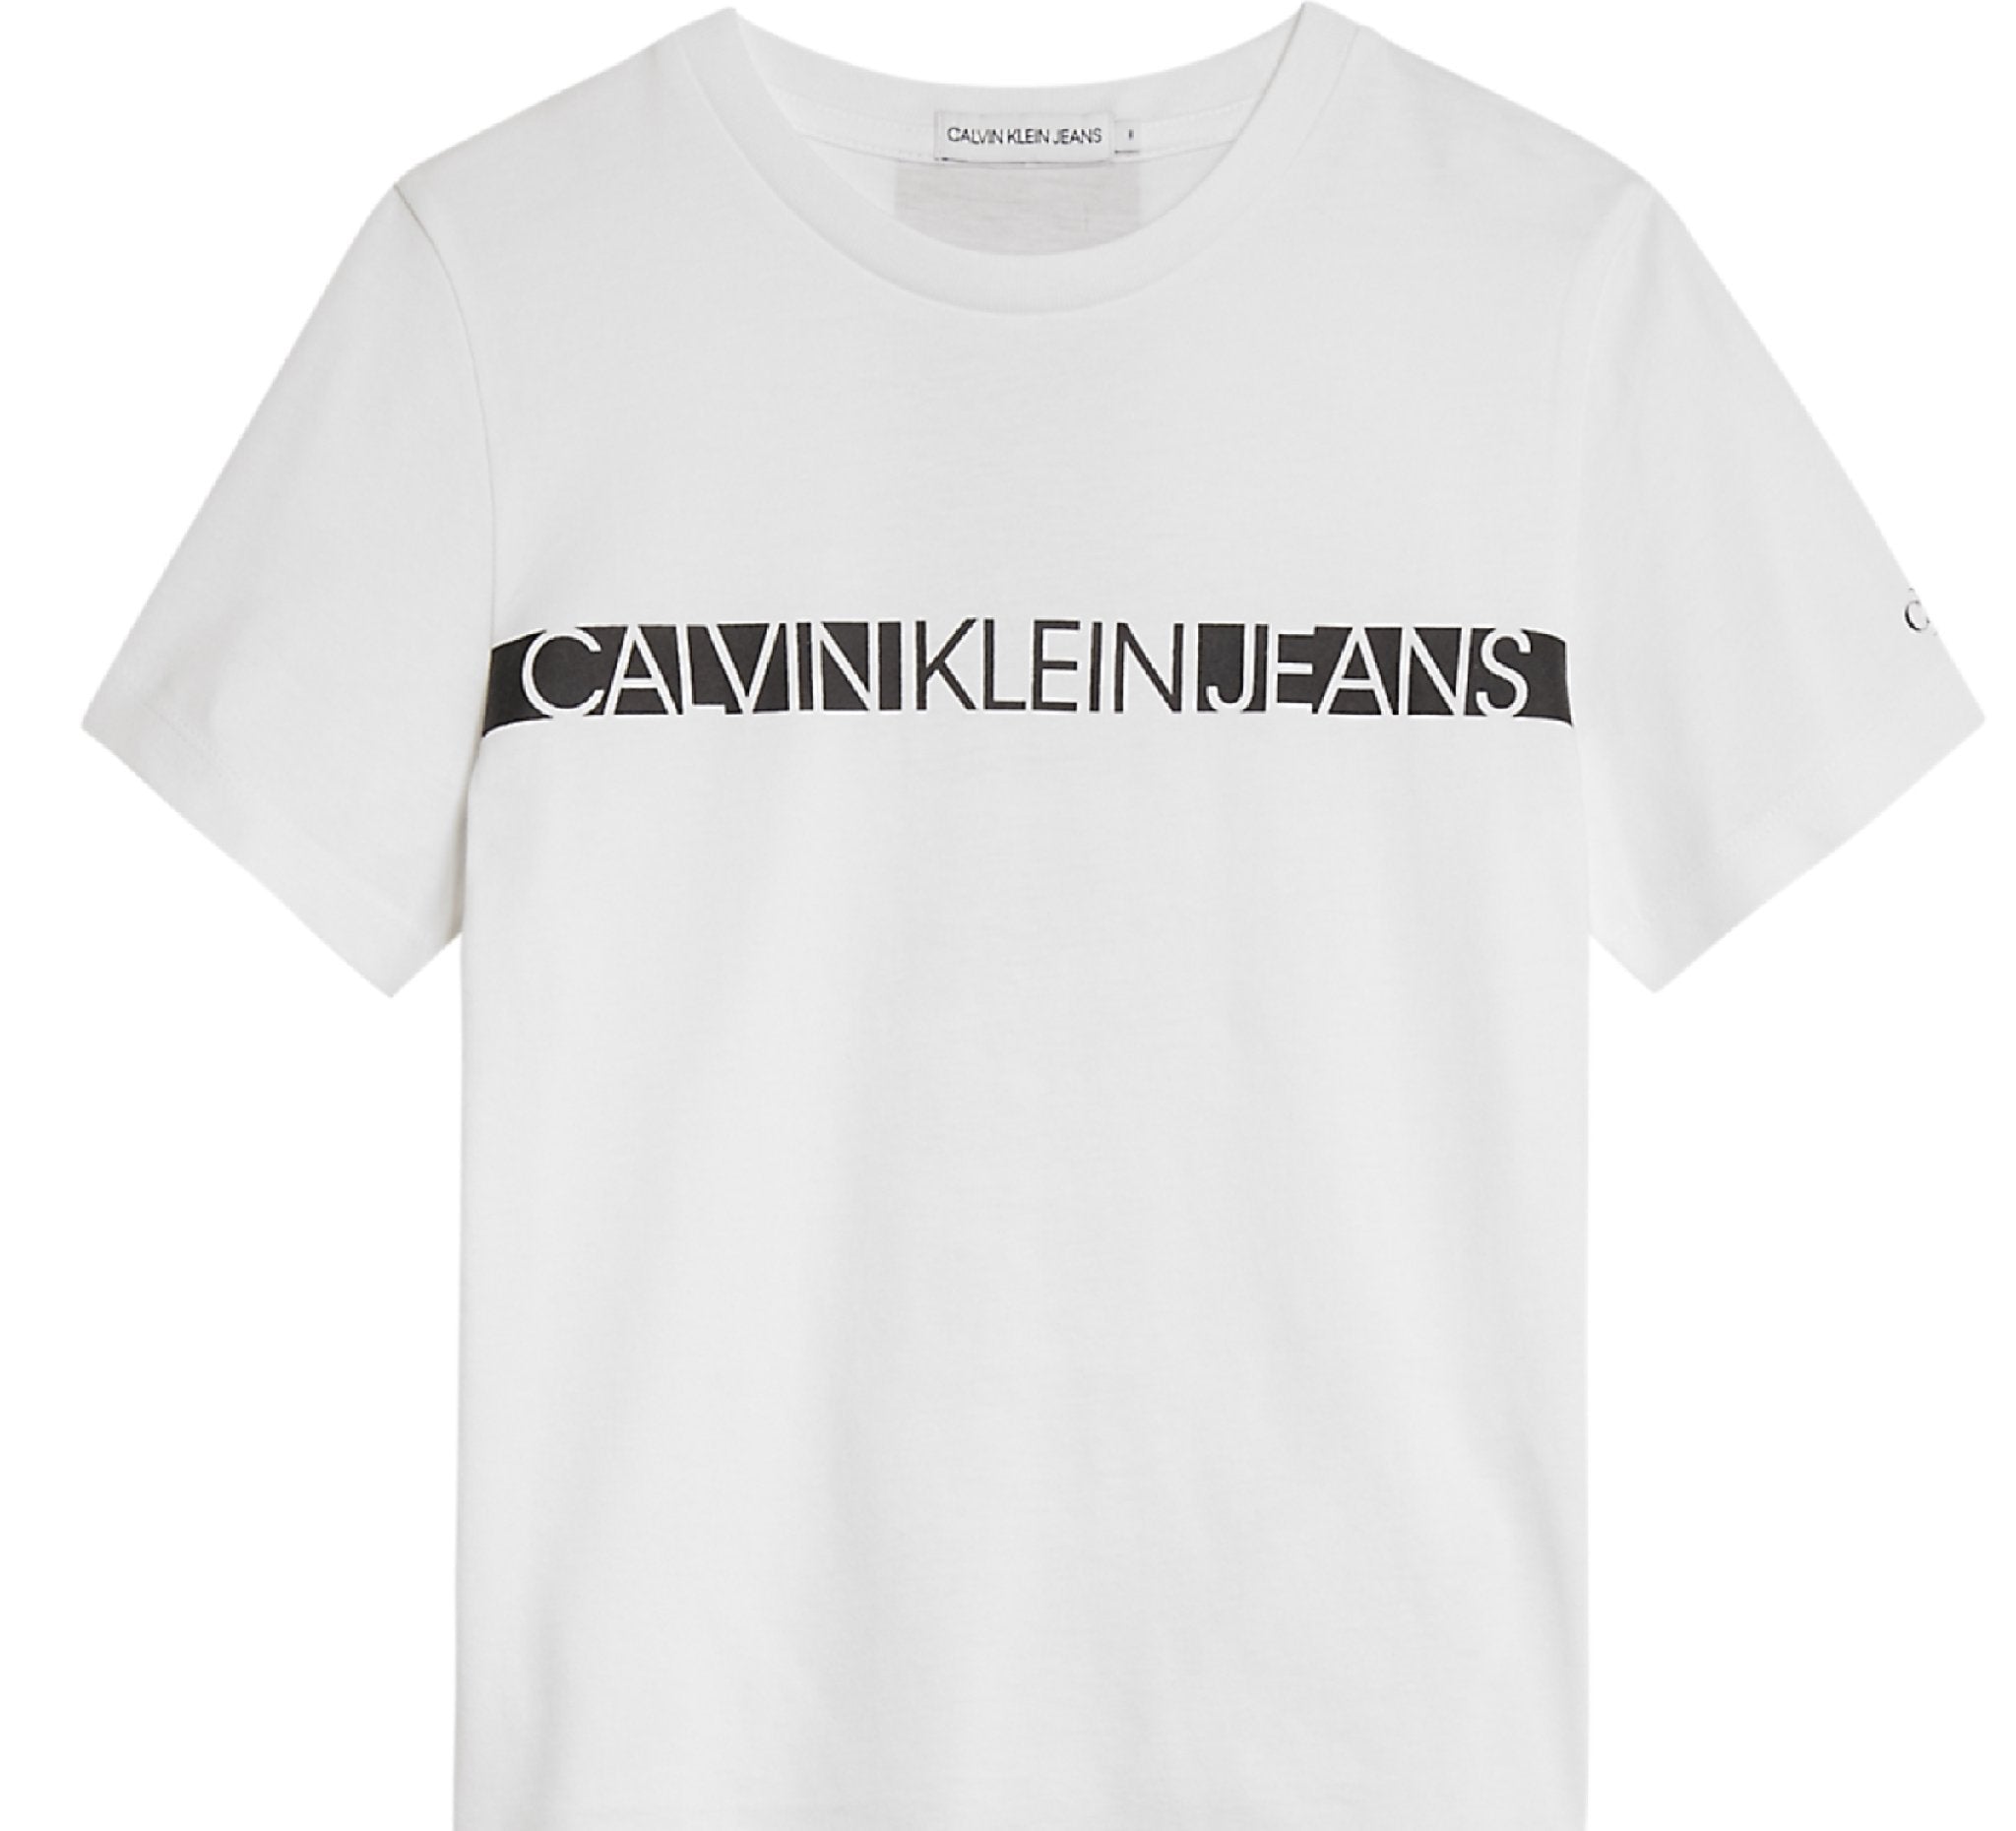 Jongens Hero Logo Ss T-Shirt van Calvin Klein in de kleur Geel in maat 176.